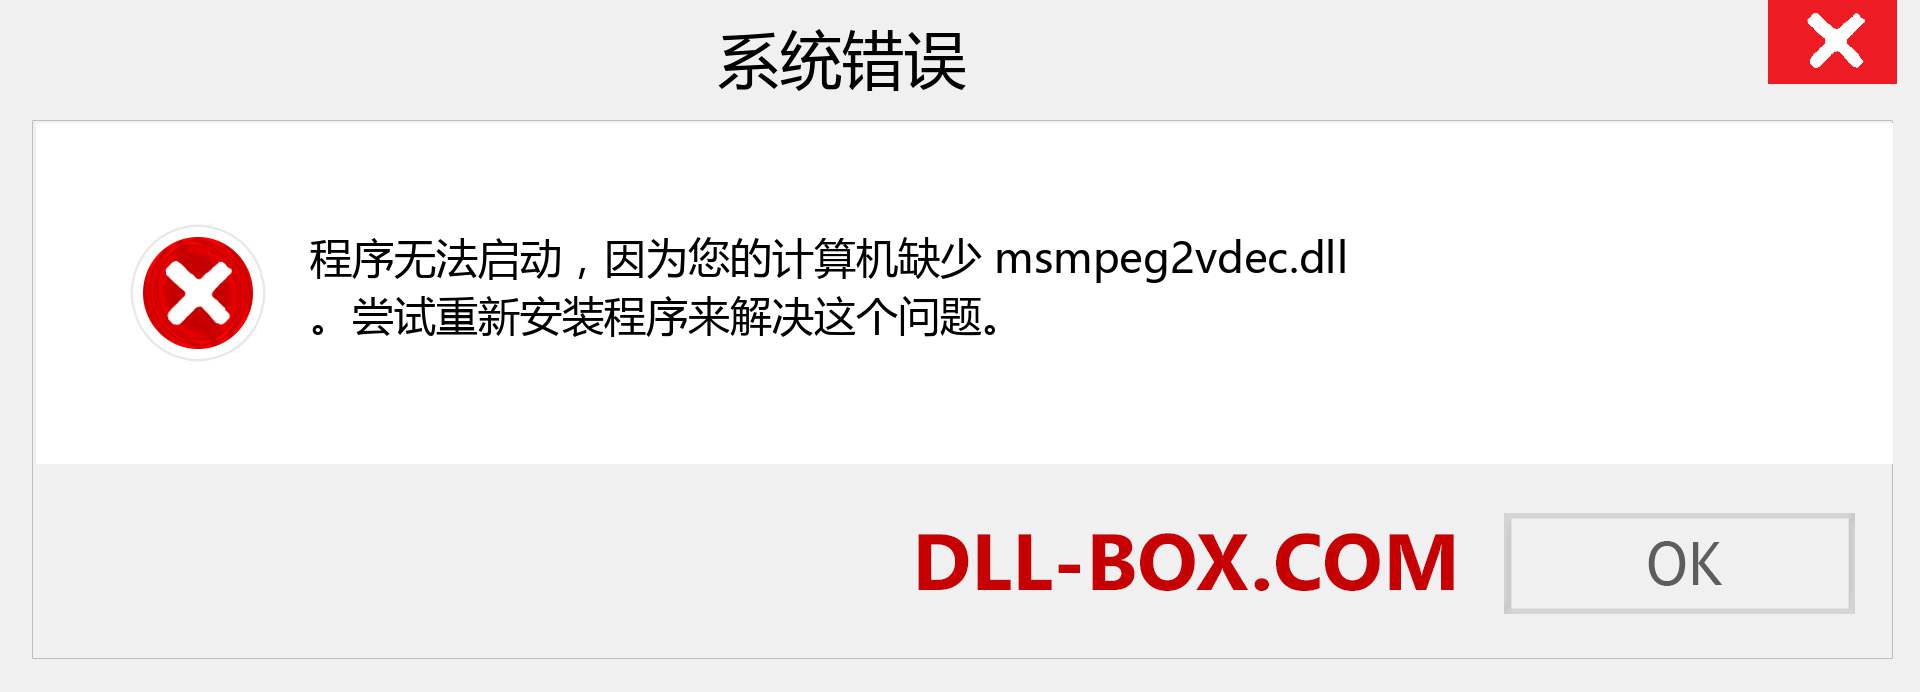 msmpeg2vdec.dll 文件丢失？。 适用于 Windows 7、8、10 的下载 - 修复 Windows、照片、图像上的 msmpeg2vdec dll 丢失错误